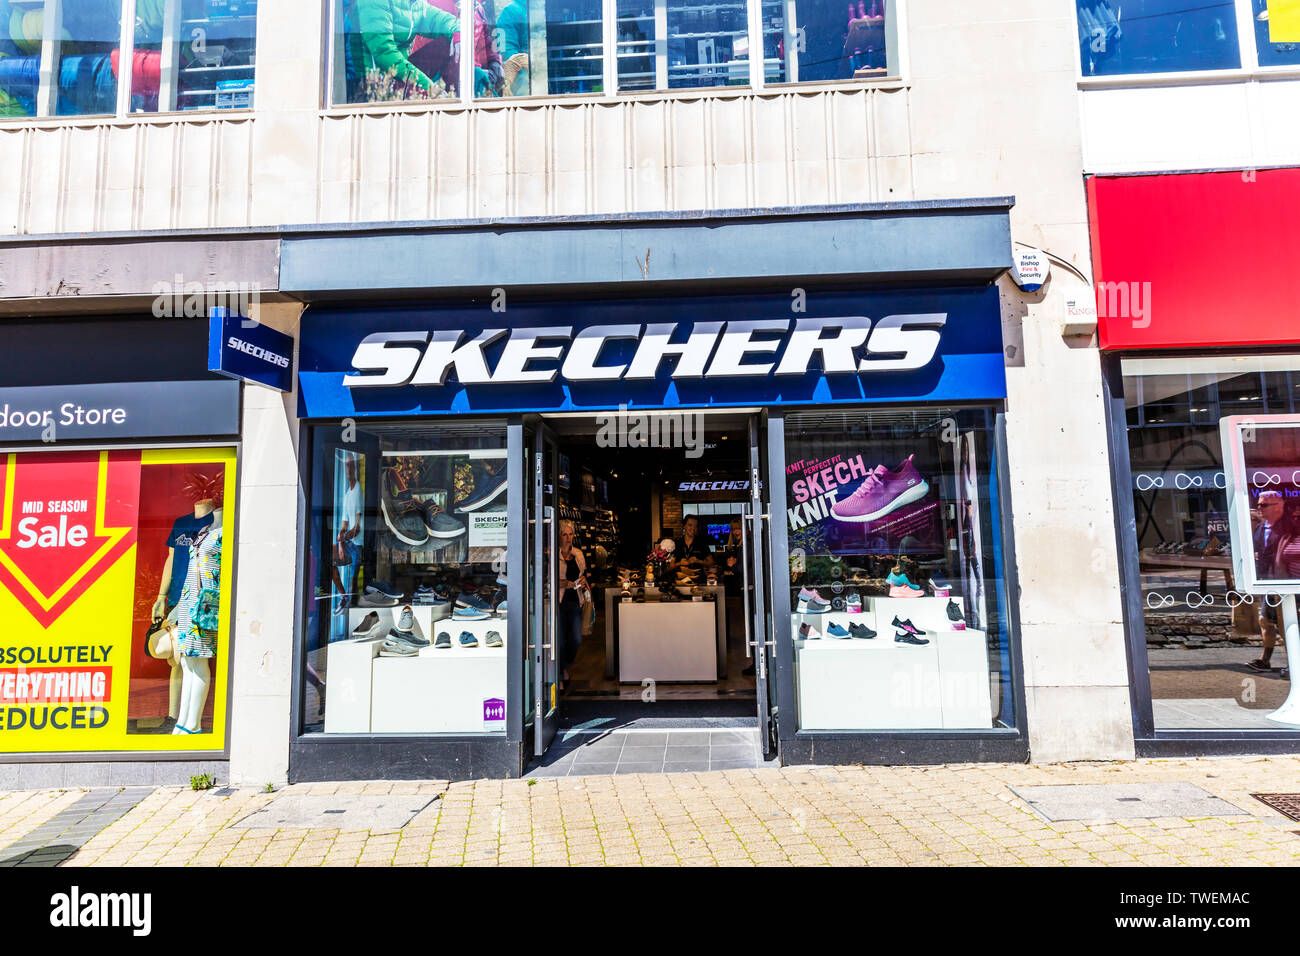 skechers shop london